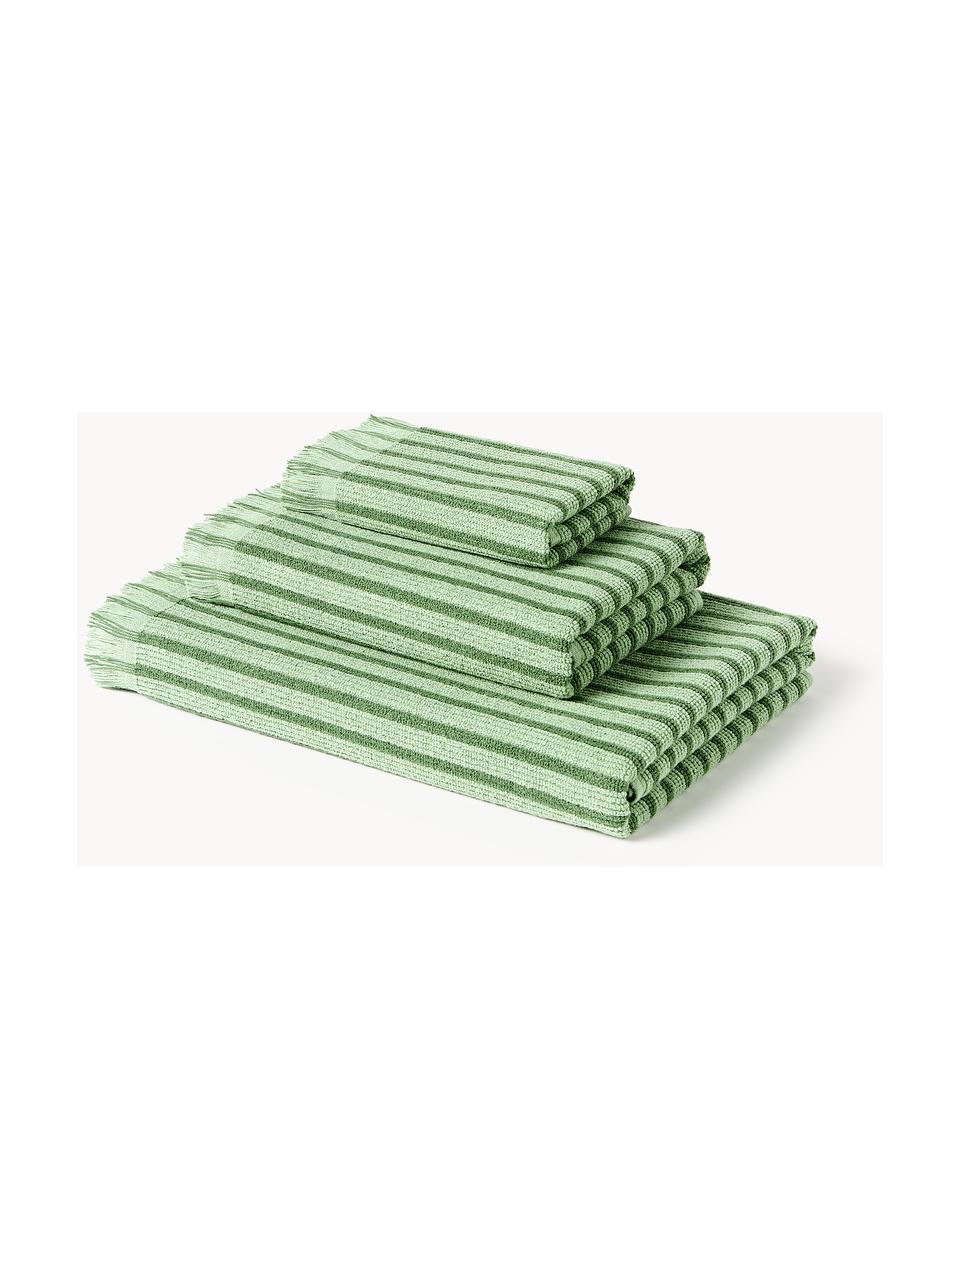 Sada ručníků Irma, různé velikosti sady, Zelená, 4dílná sada (ručník a osuška)